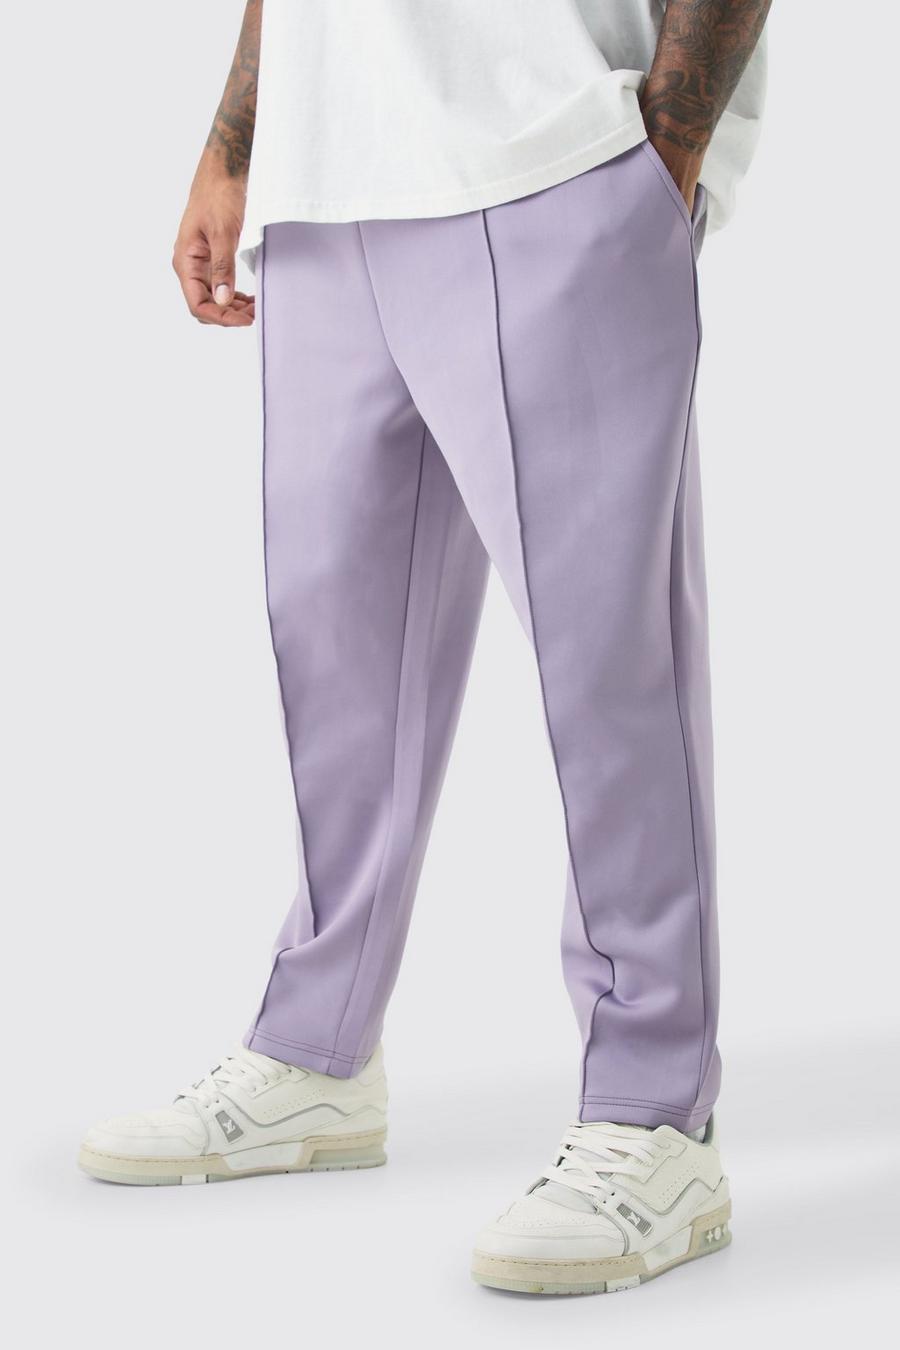 Pantaloni tuta Plus Size affusolati alla caviglia in Scuba, Purple